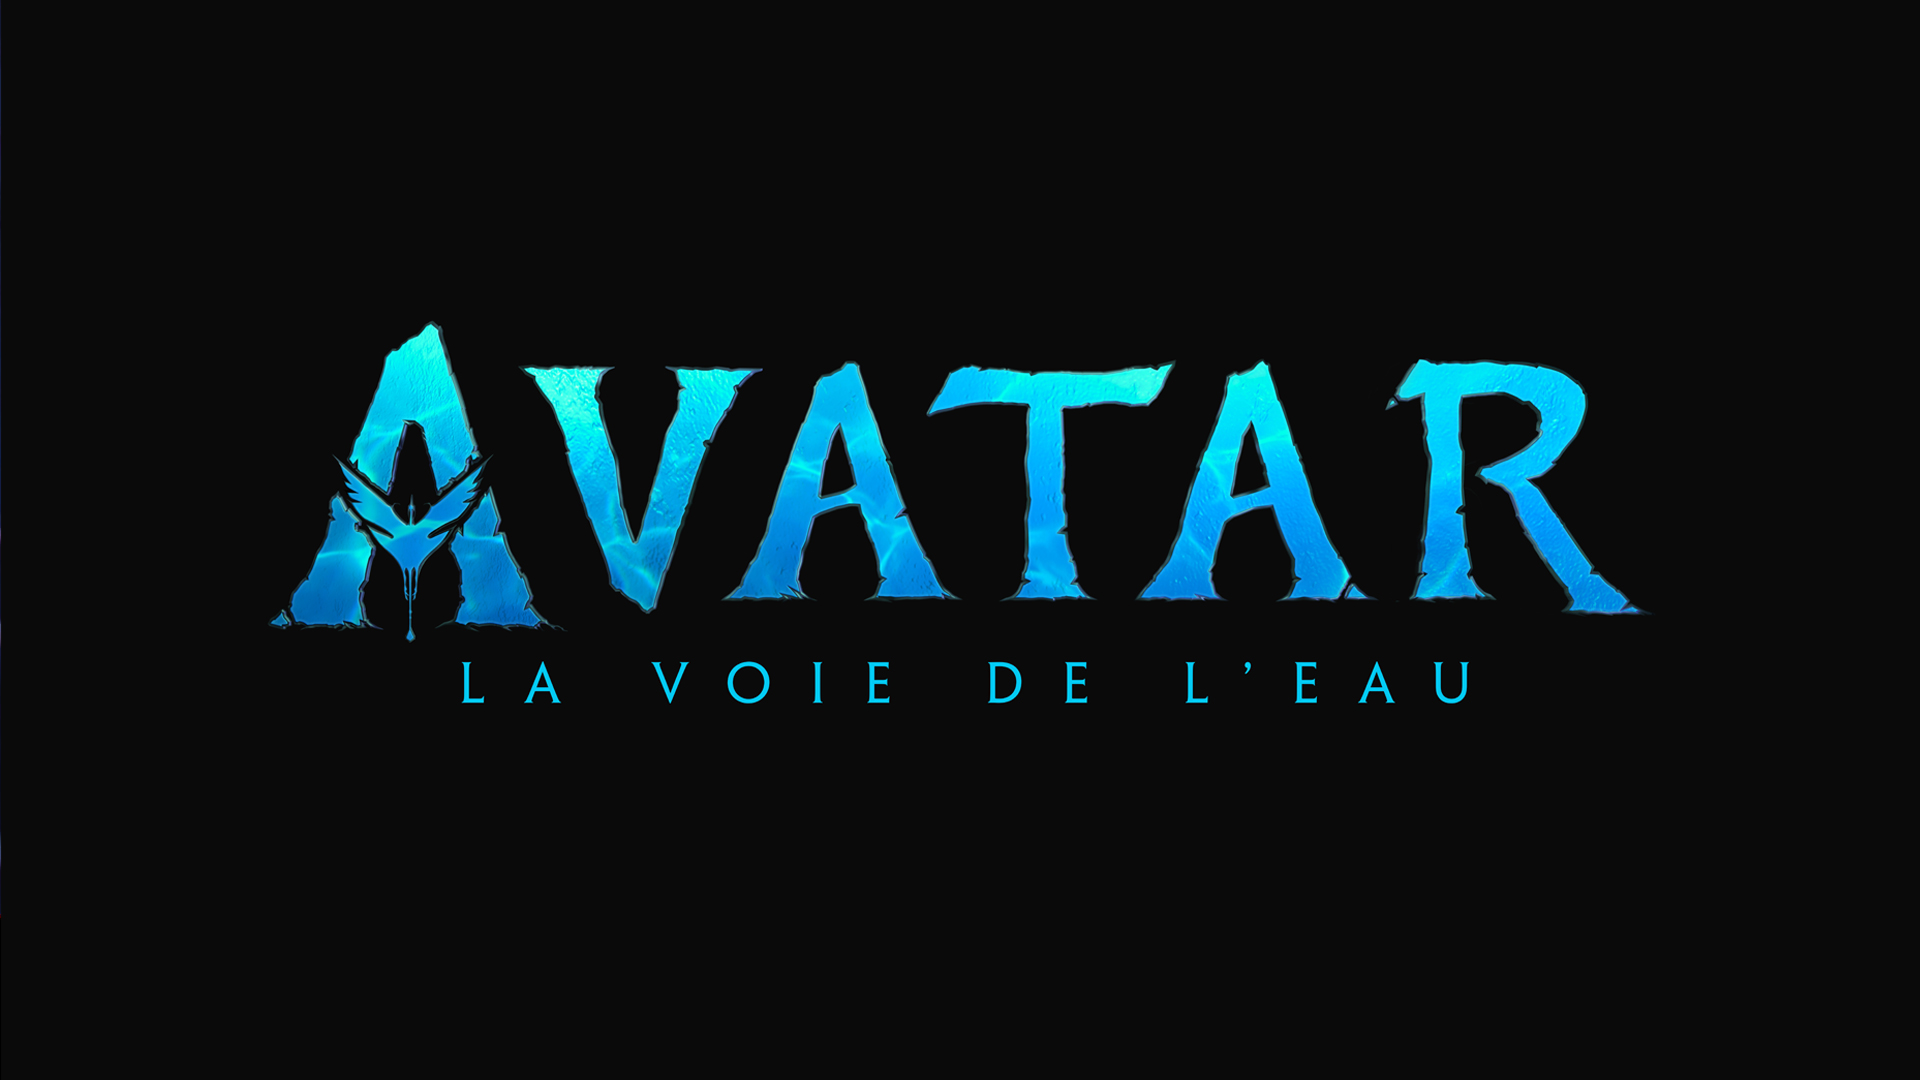 Avatar 2 La voie de l’eau : où voir le film en streaming gratuit ?